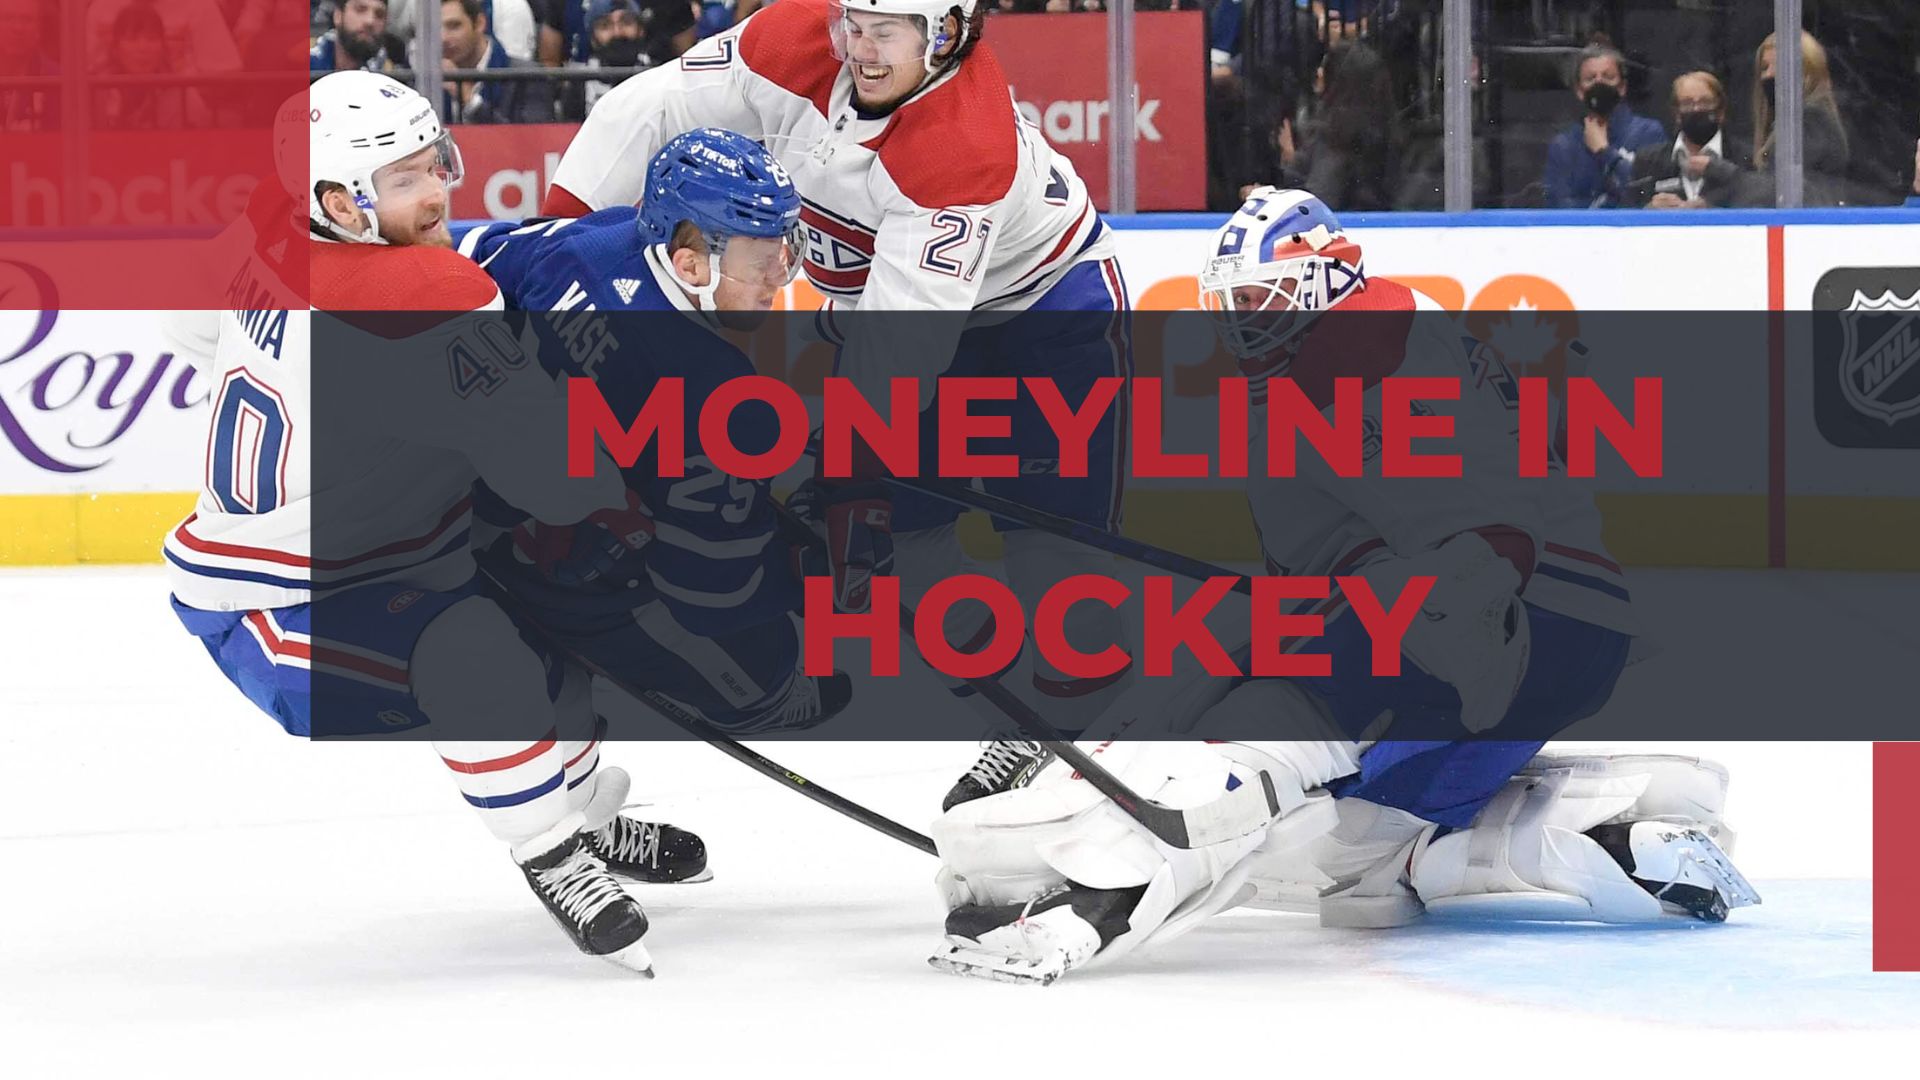 What is moneyline in Hockey?